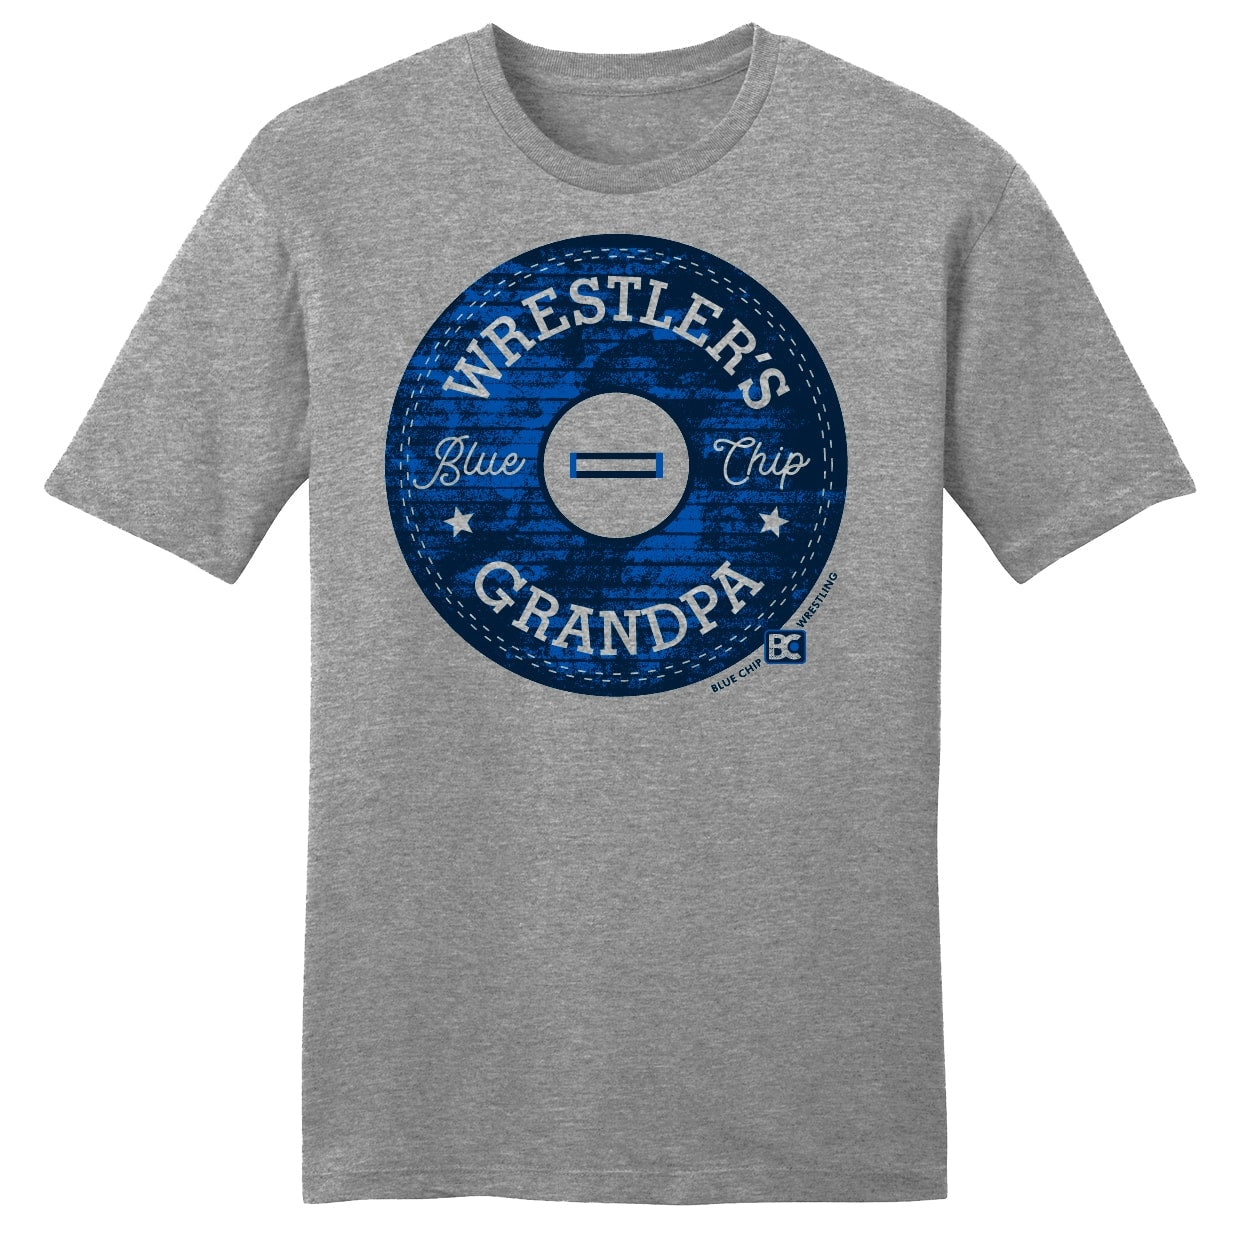 Wrestler's Grandpa Street Wrestling T-Shirt